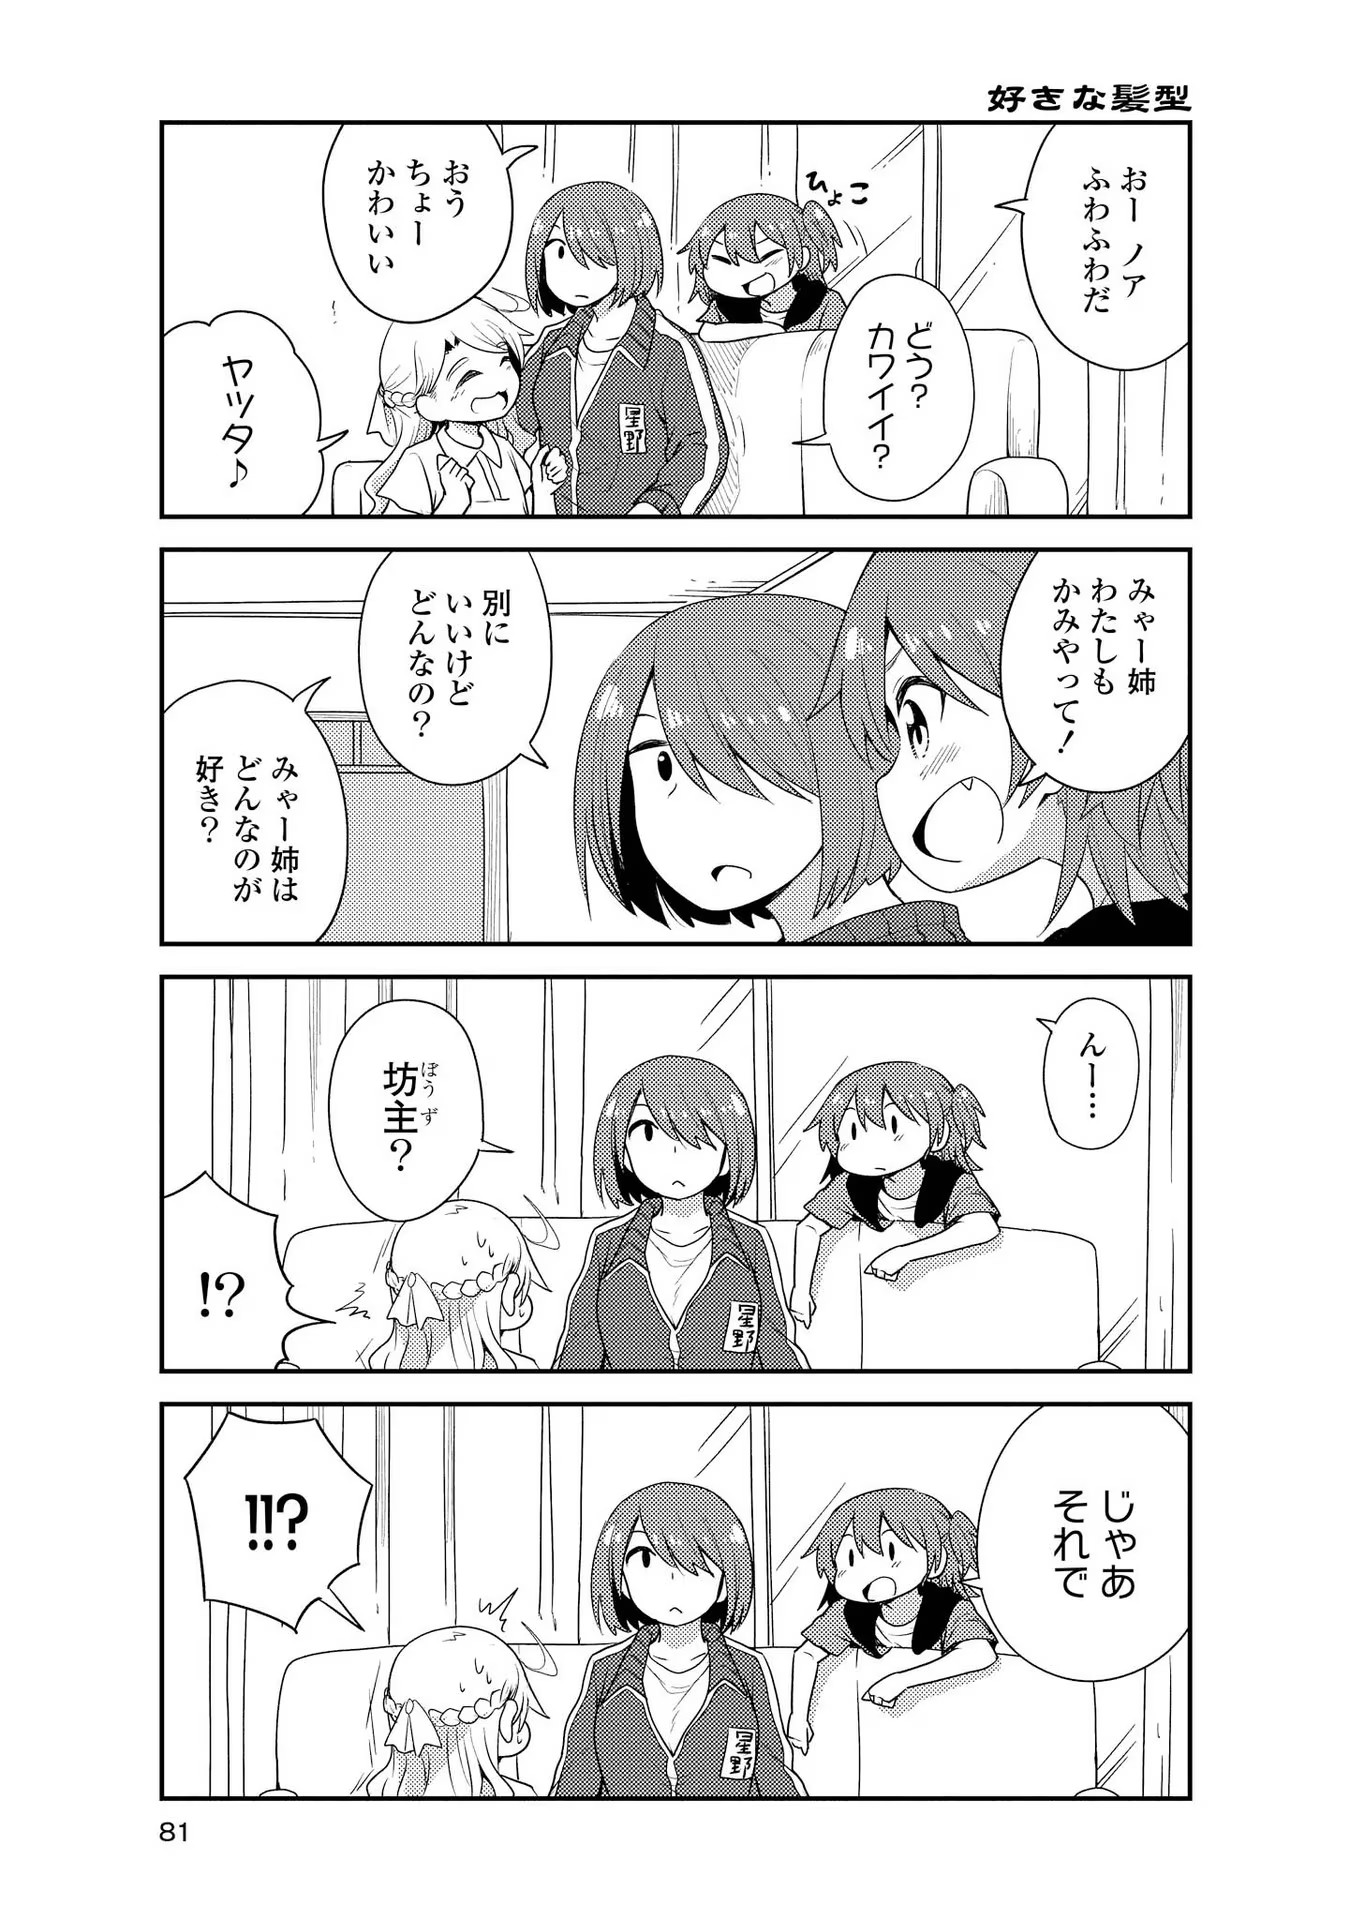 Watashi ni Tenshi ga Maiorita! - Chapter 16 - Page 5